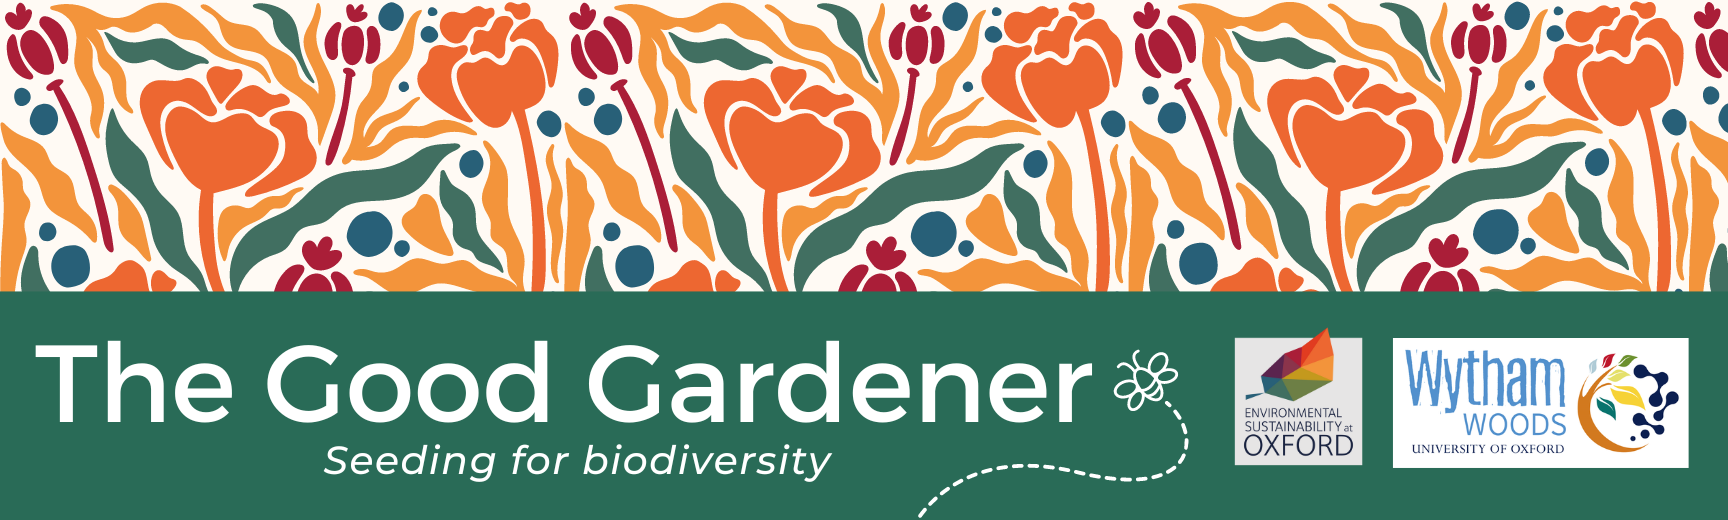 The Good Gardener banner - seeding for biodiversity